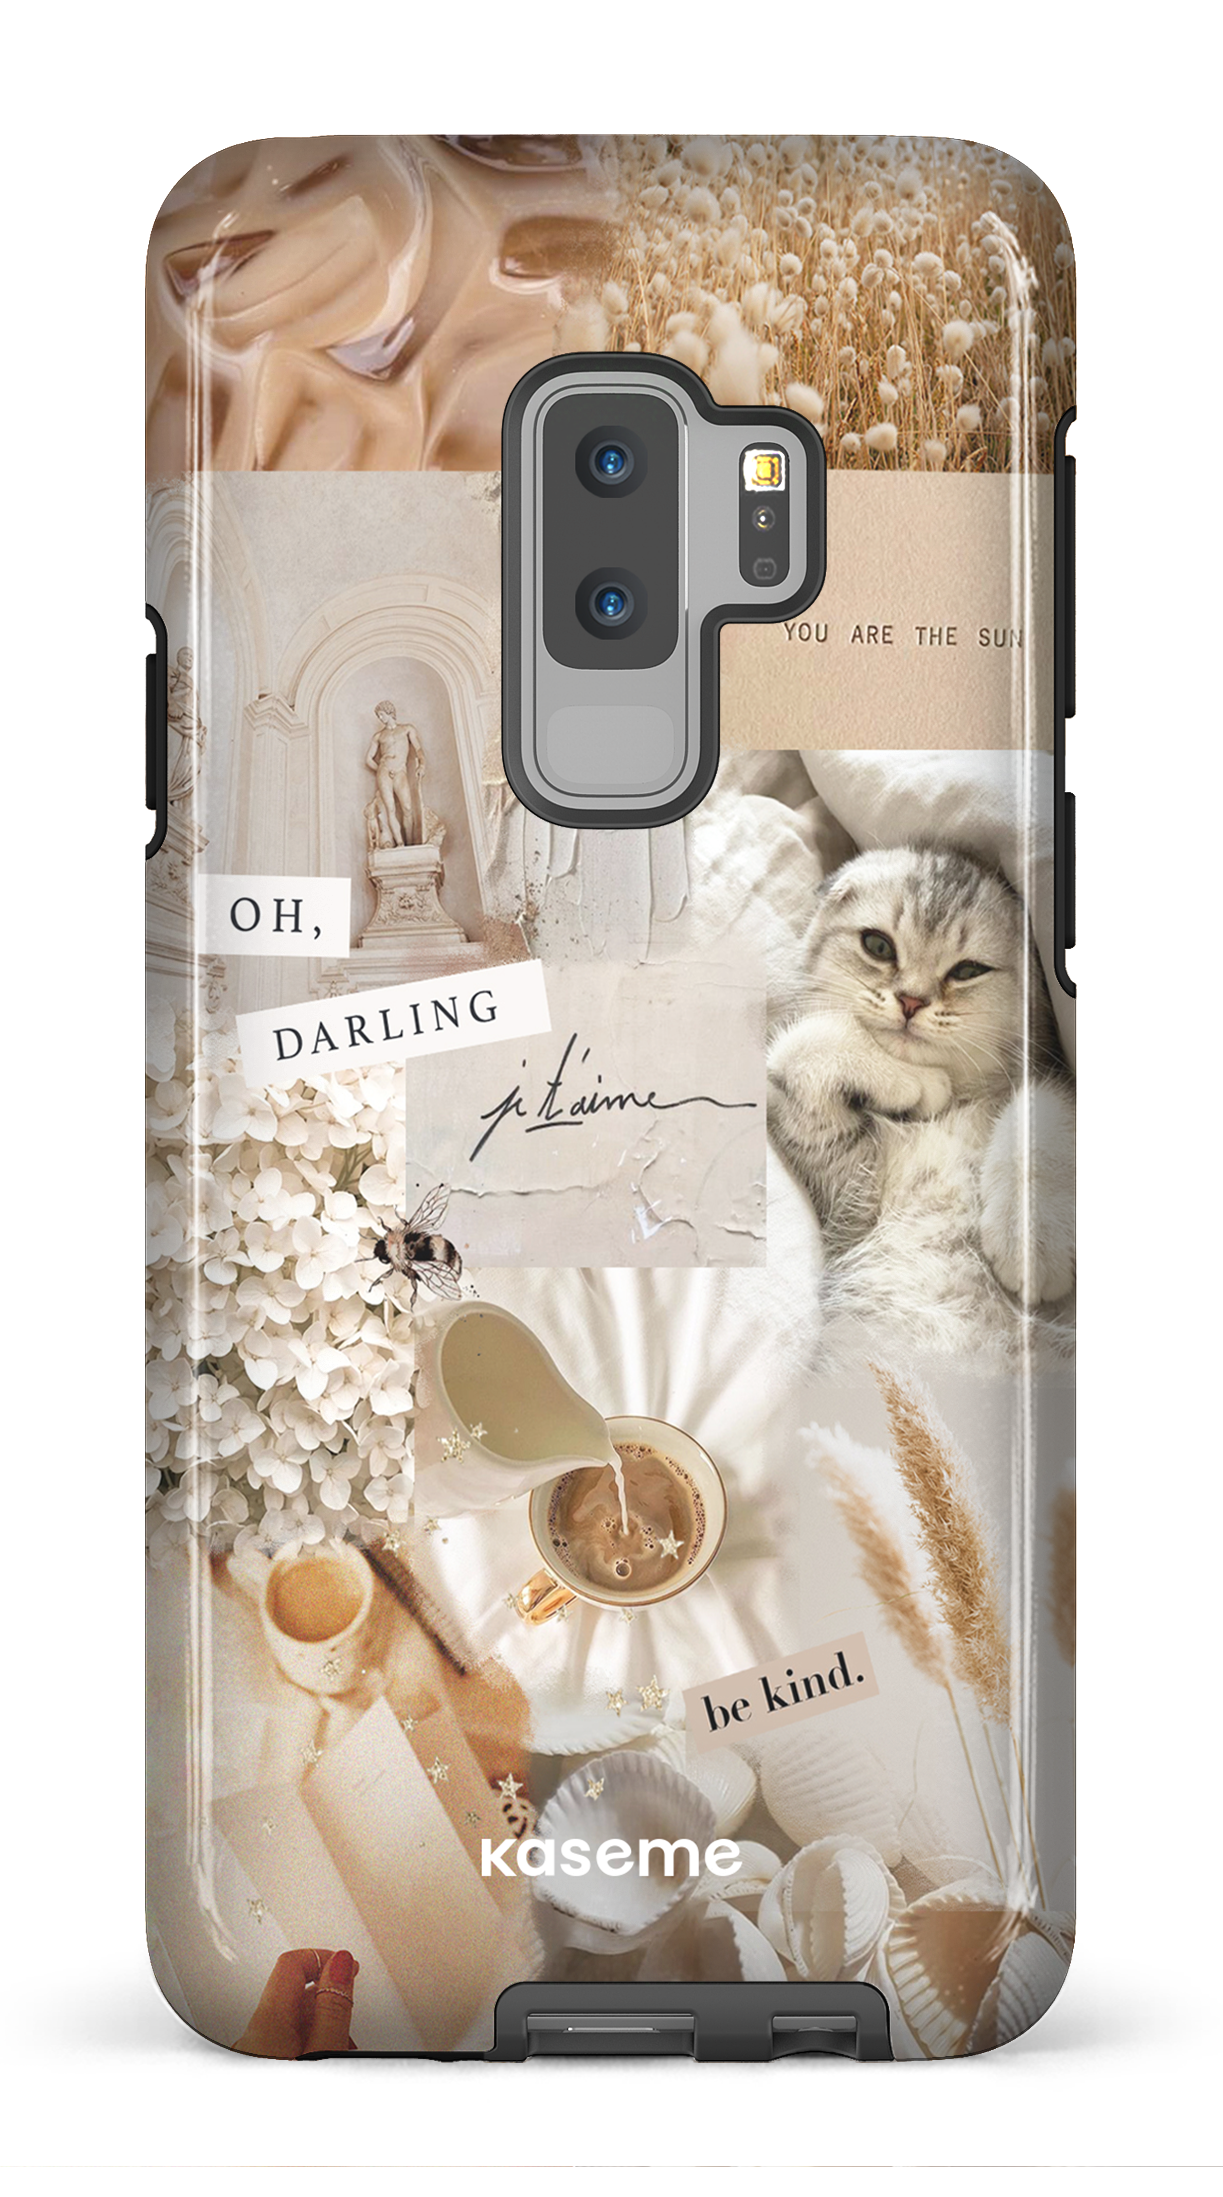 Darlin' - Galaxy S9 Plus